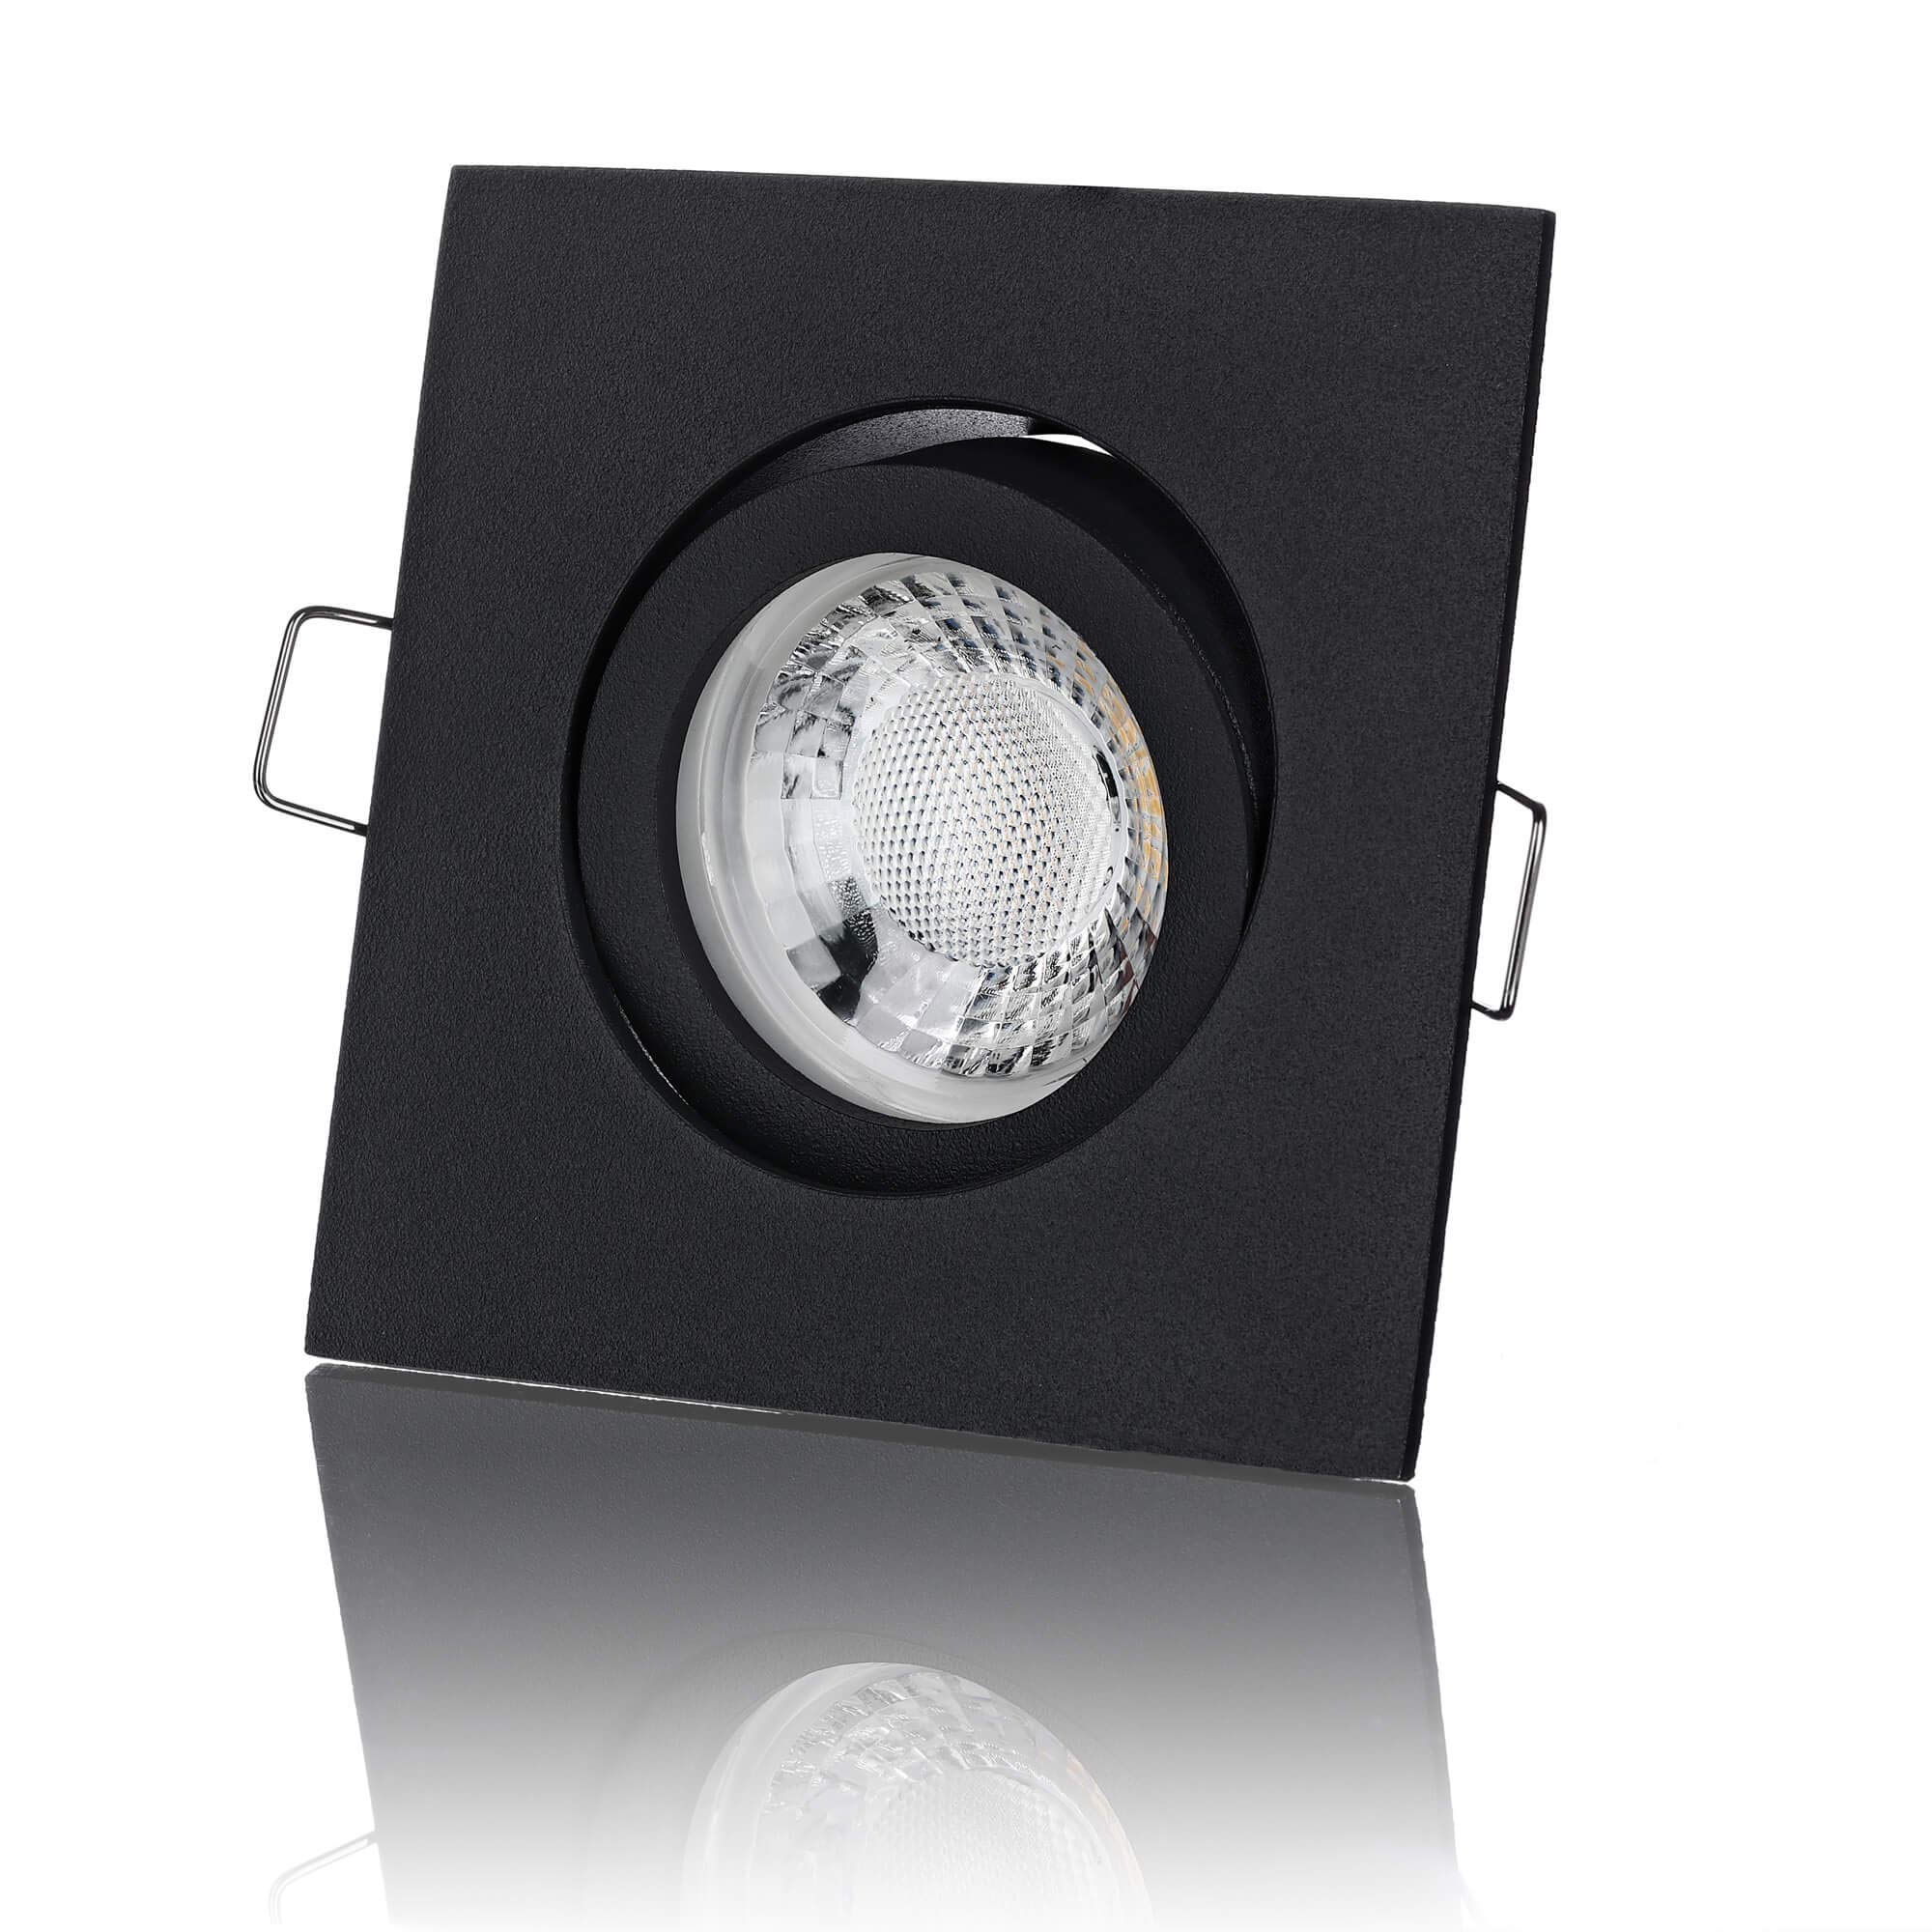 lambado® Premium LED Spot 230V Flach Schwarz - Hell & Sparsam inkl. 5W Strahler neutralweiss dimmbar - Moderne Beleuchtung durch zeitlose Einbaustrahler/Deckenstrahler